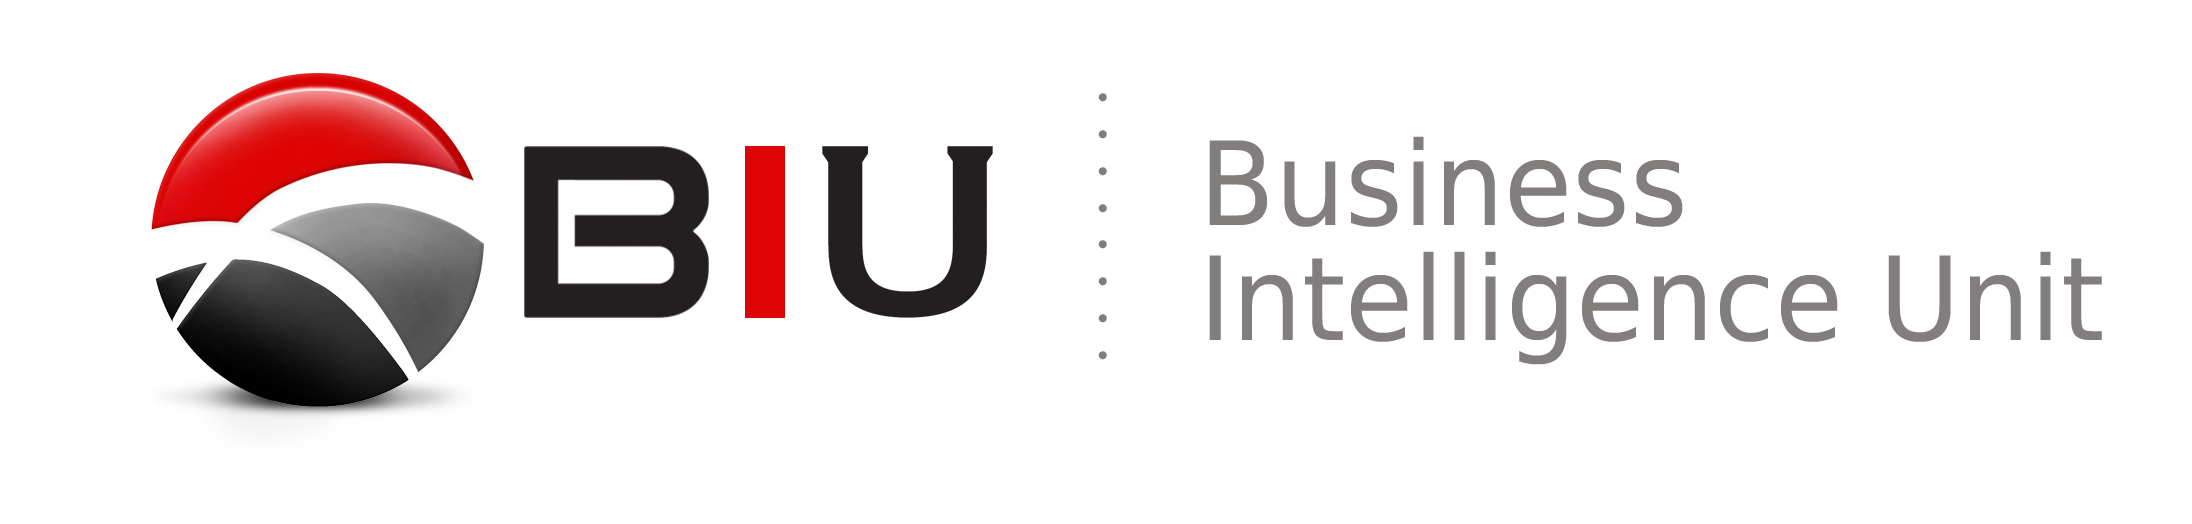 BIU logo